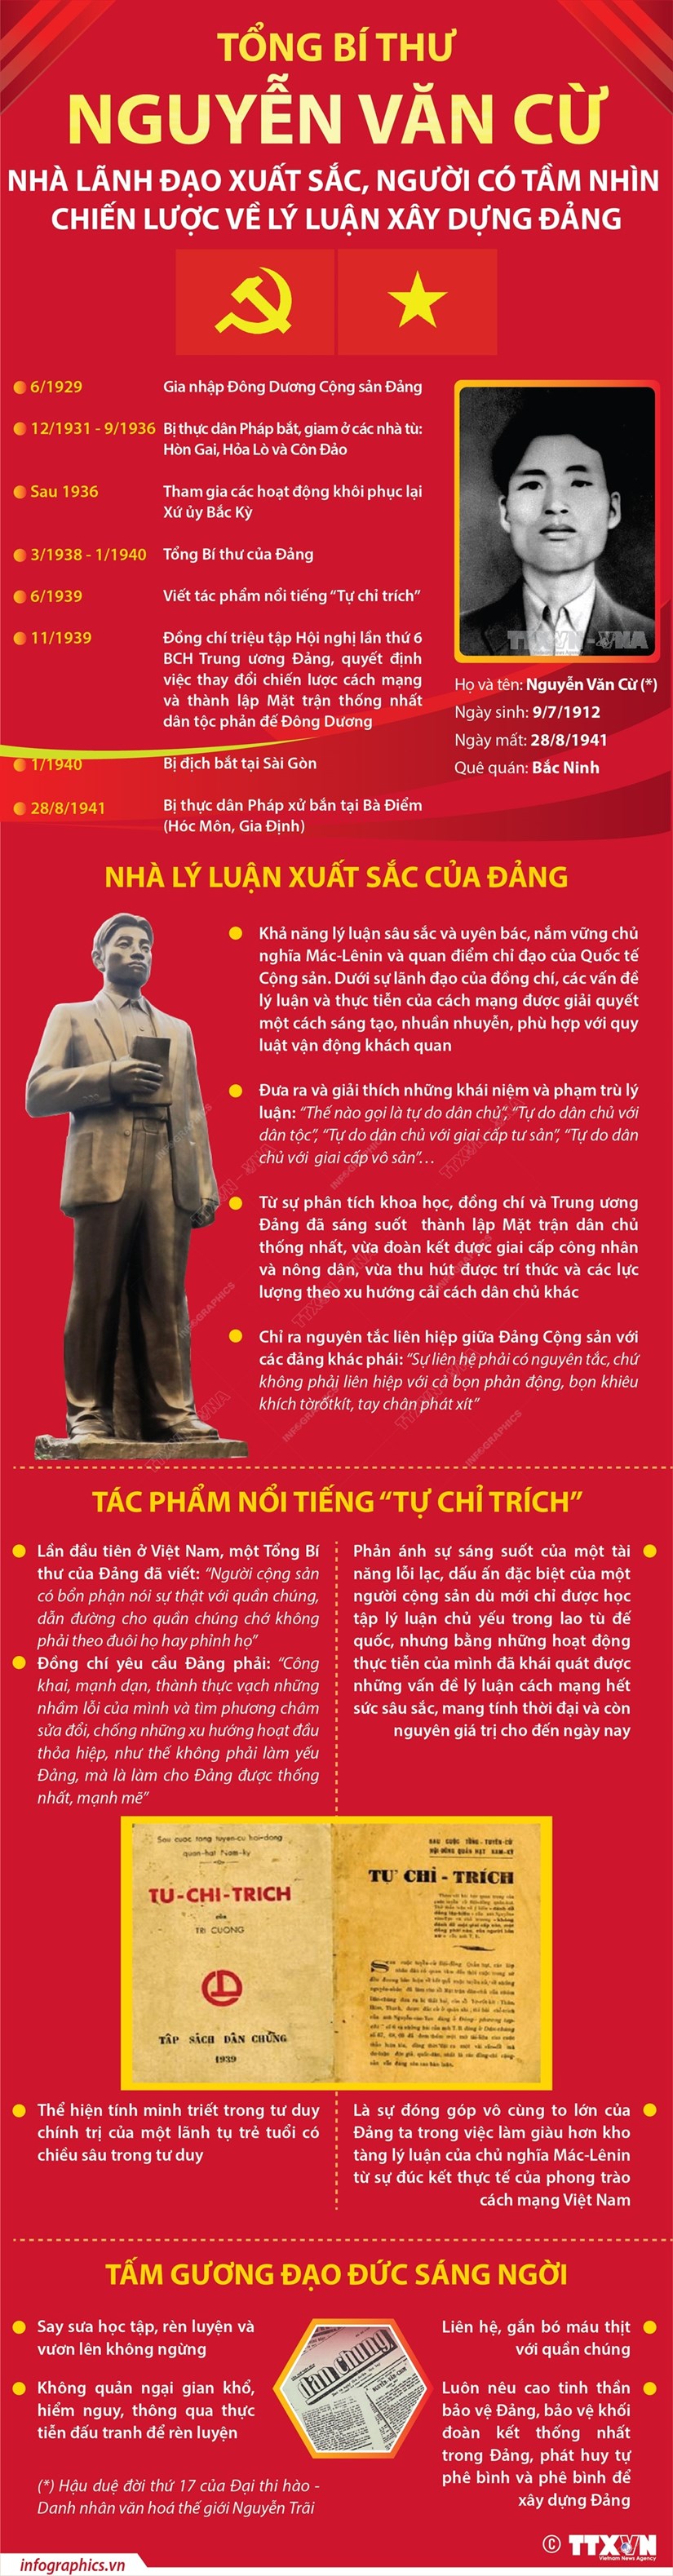 [Infographics] Tổng Bí thư Nguyễn Văn Cừ - nhà lãnh đạo xuất sắc